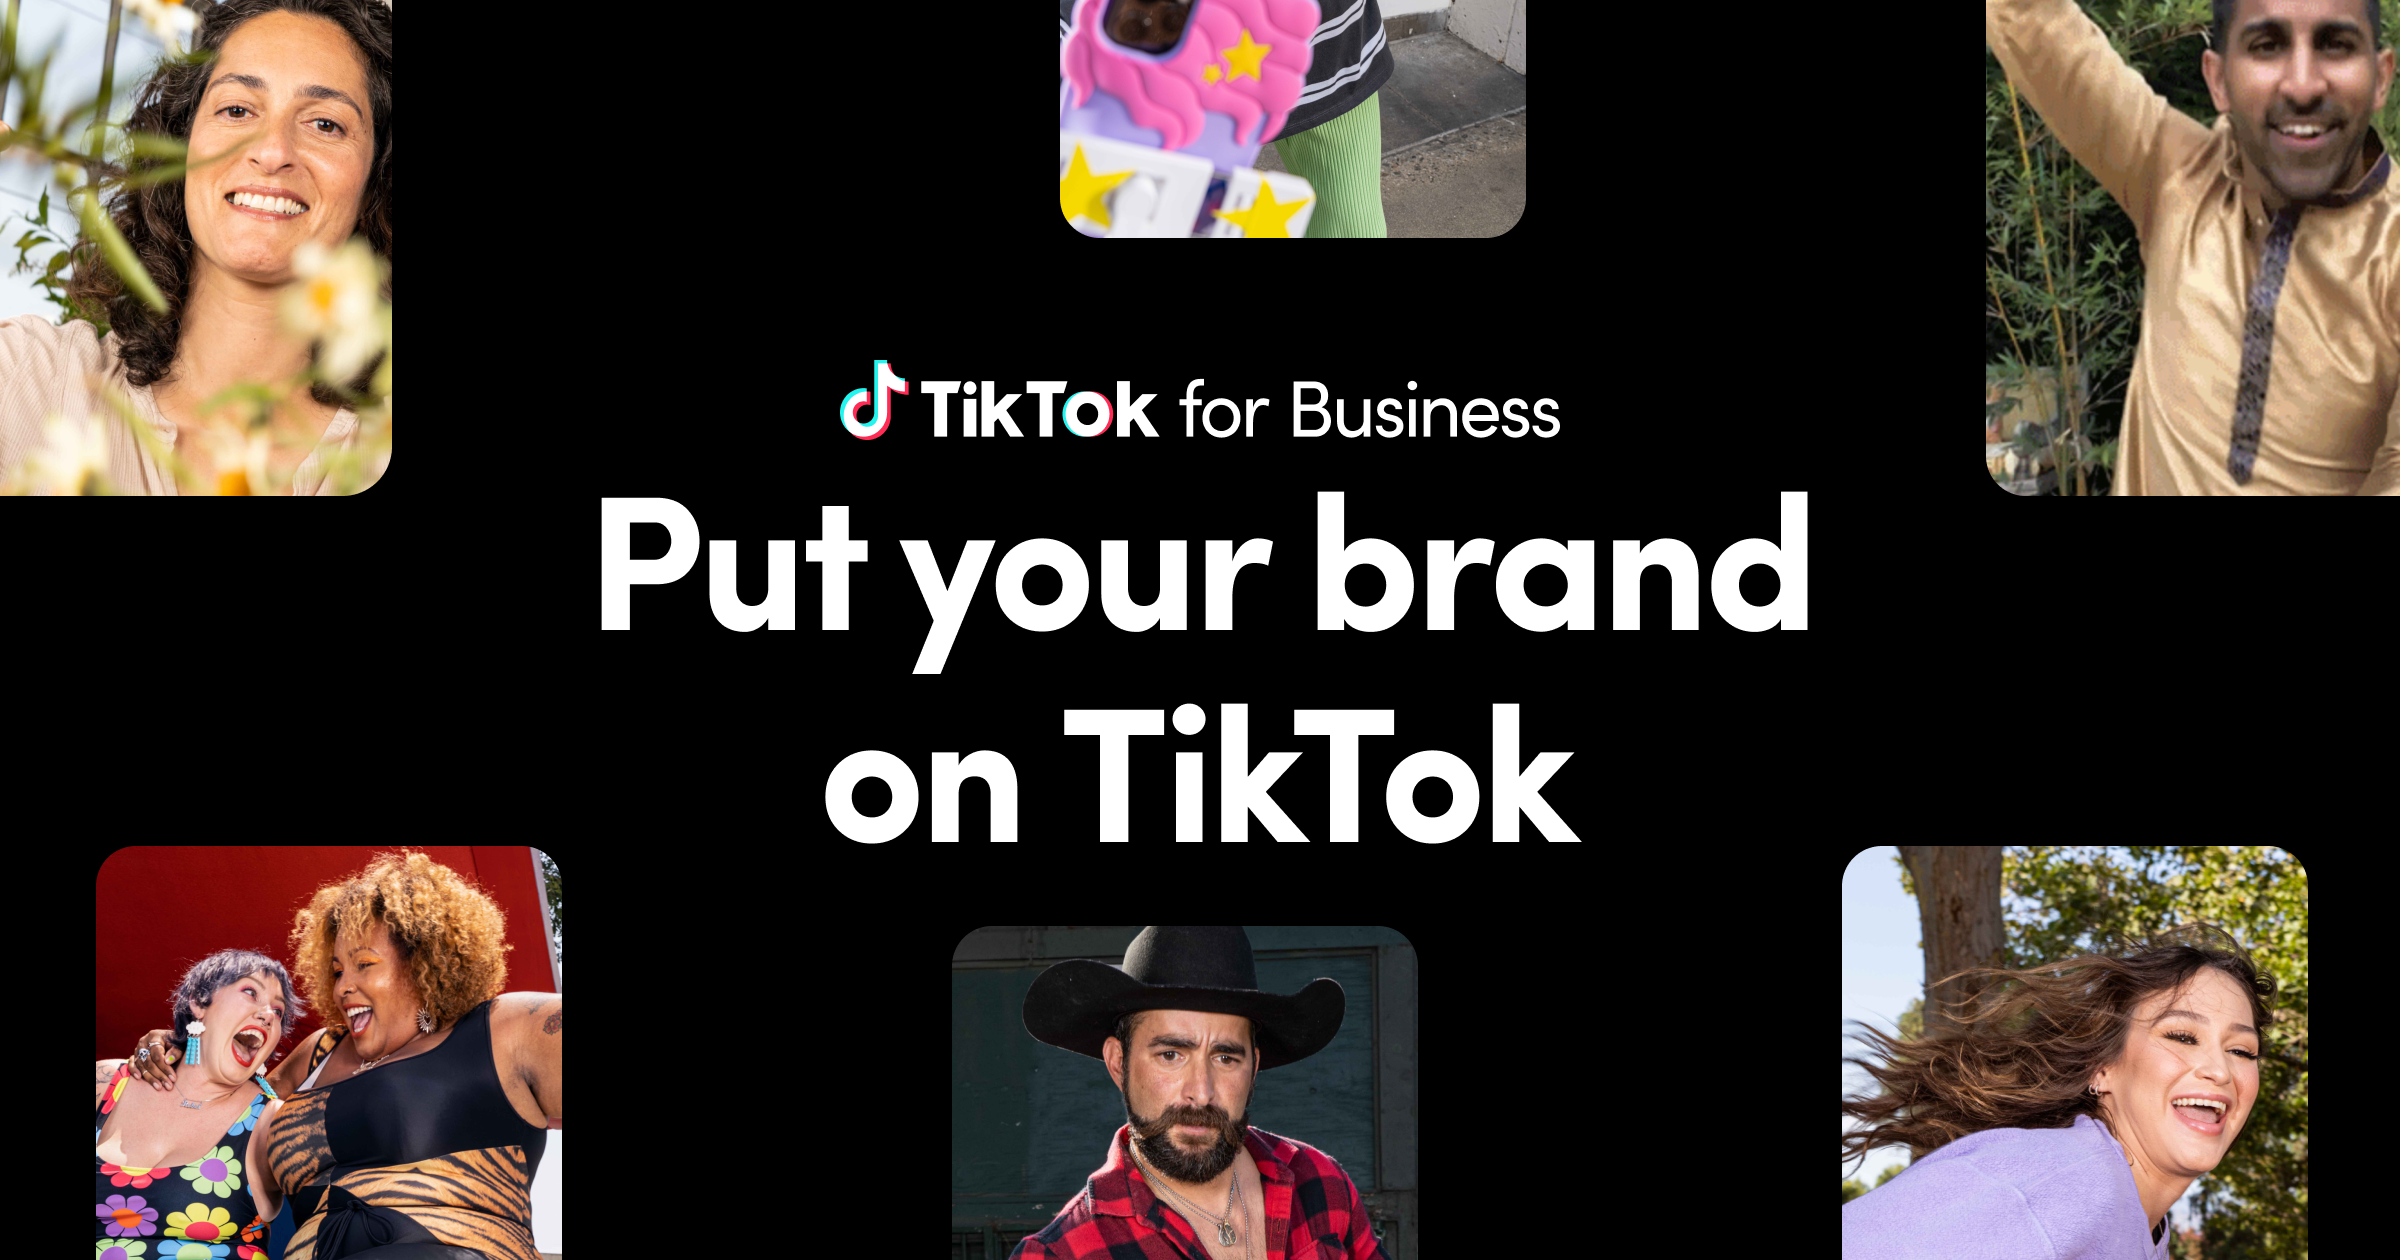 TikTok for Business | Marketing & Advertising on TikTok